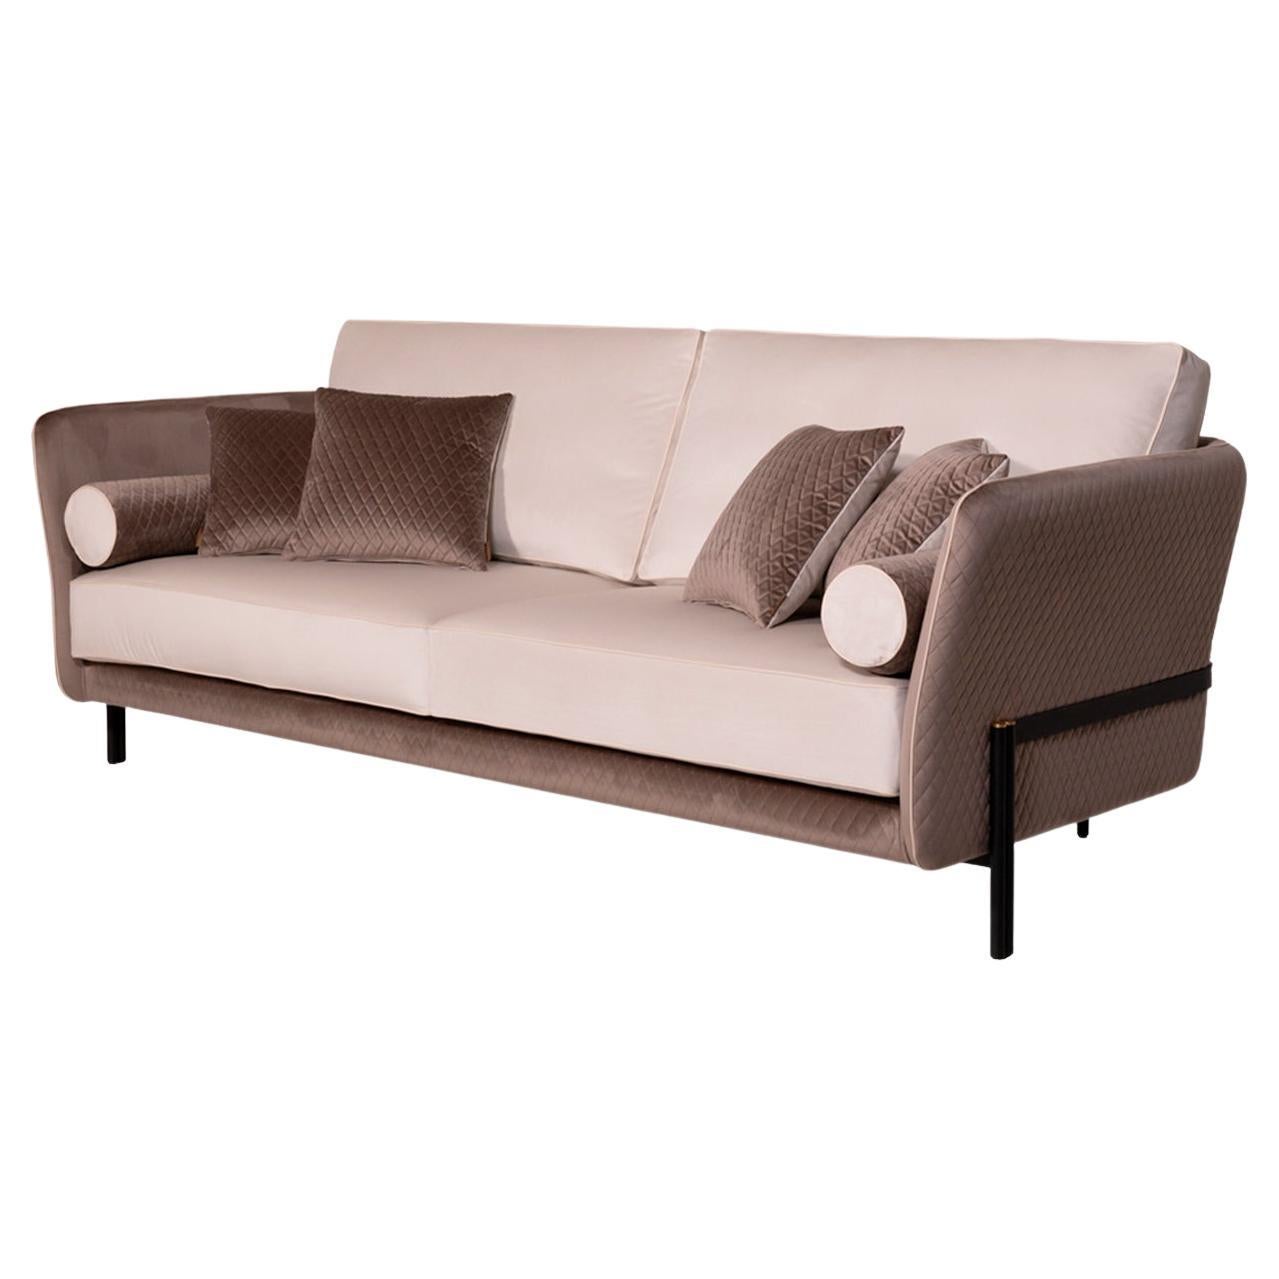 Das Sofa Universal ist eines der neuen und eleganten Produkte, die von der Familie Mantellassi entworfen wurden. Das Gestell besteht aus zwei Beinen aus massivem, satiniertem Messing, die sich anheben und der geschwungenen Linie der gepolsterten